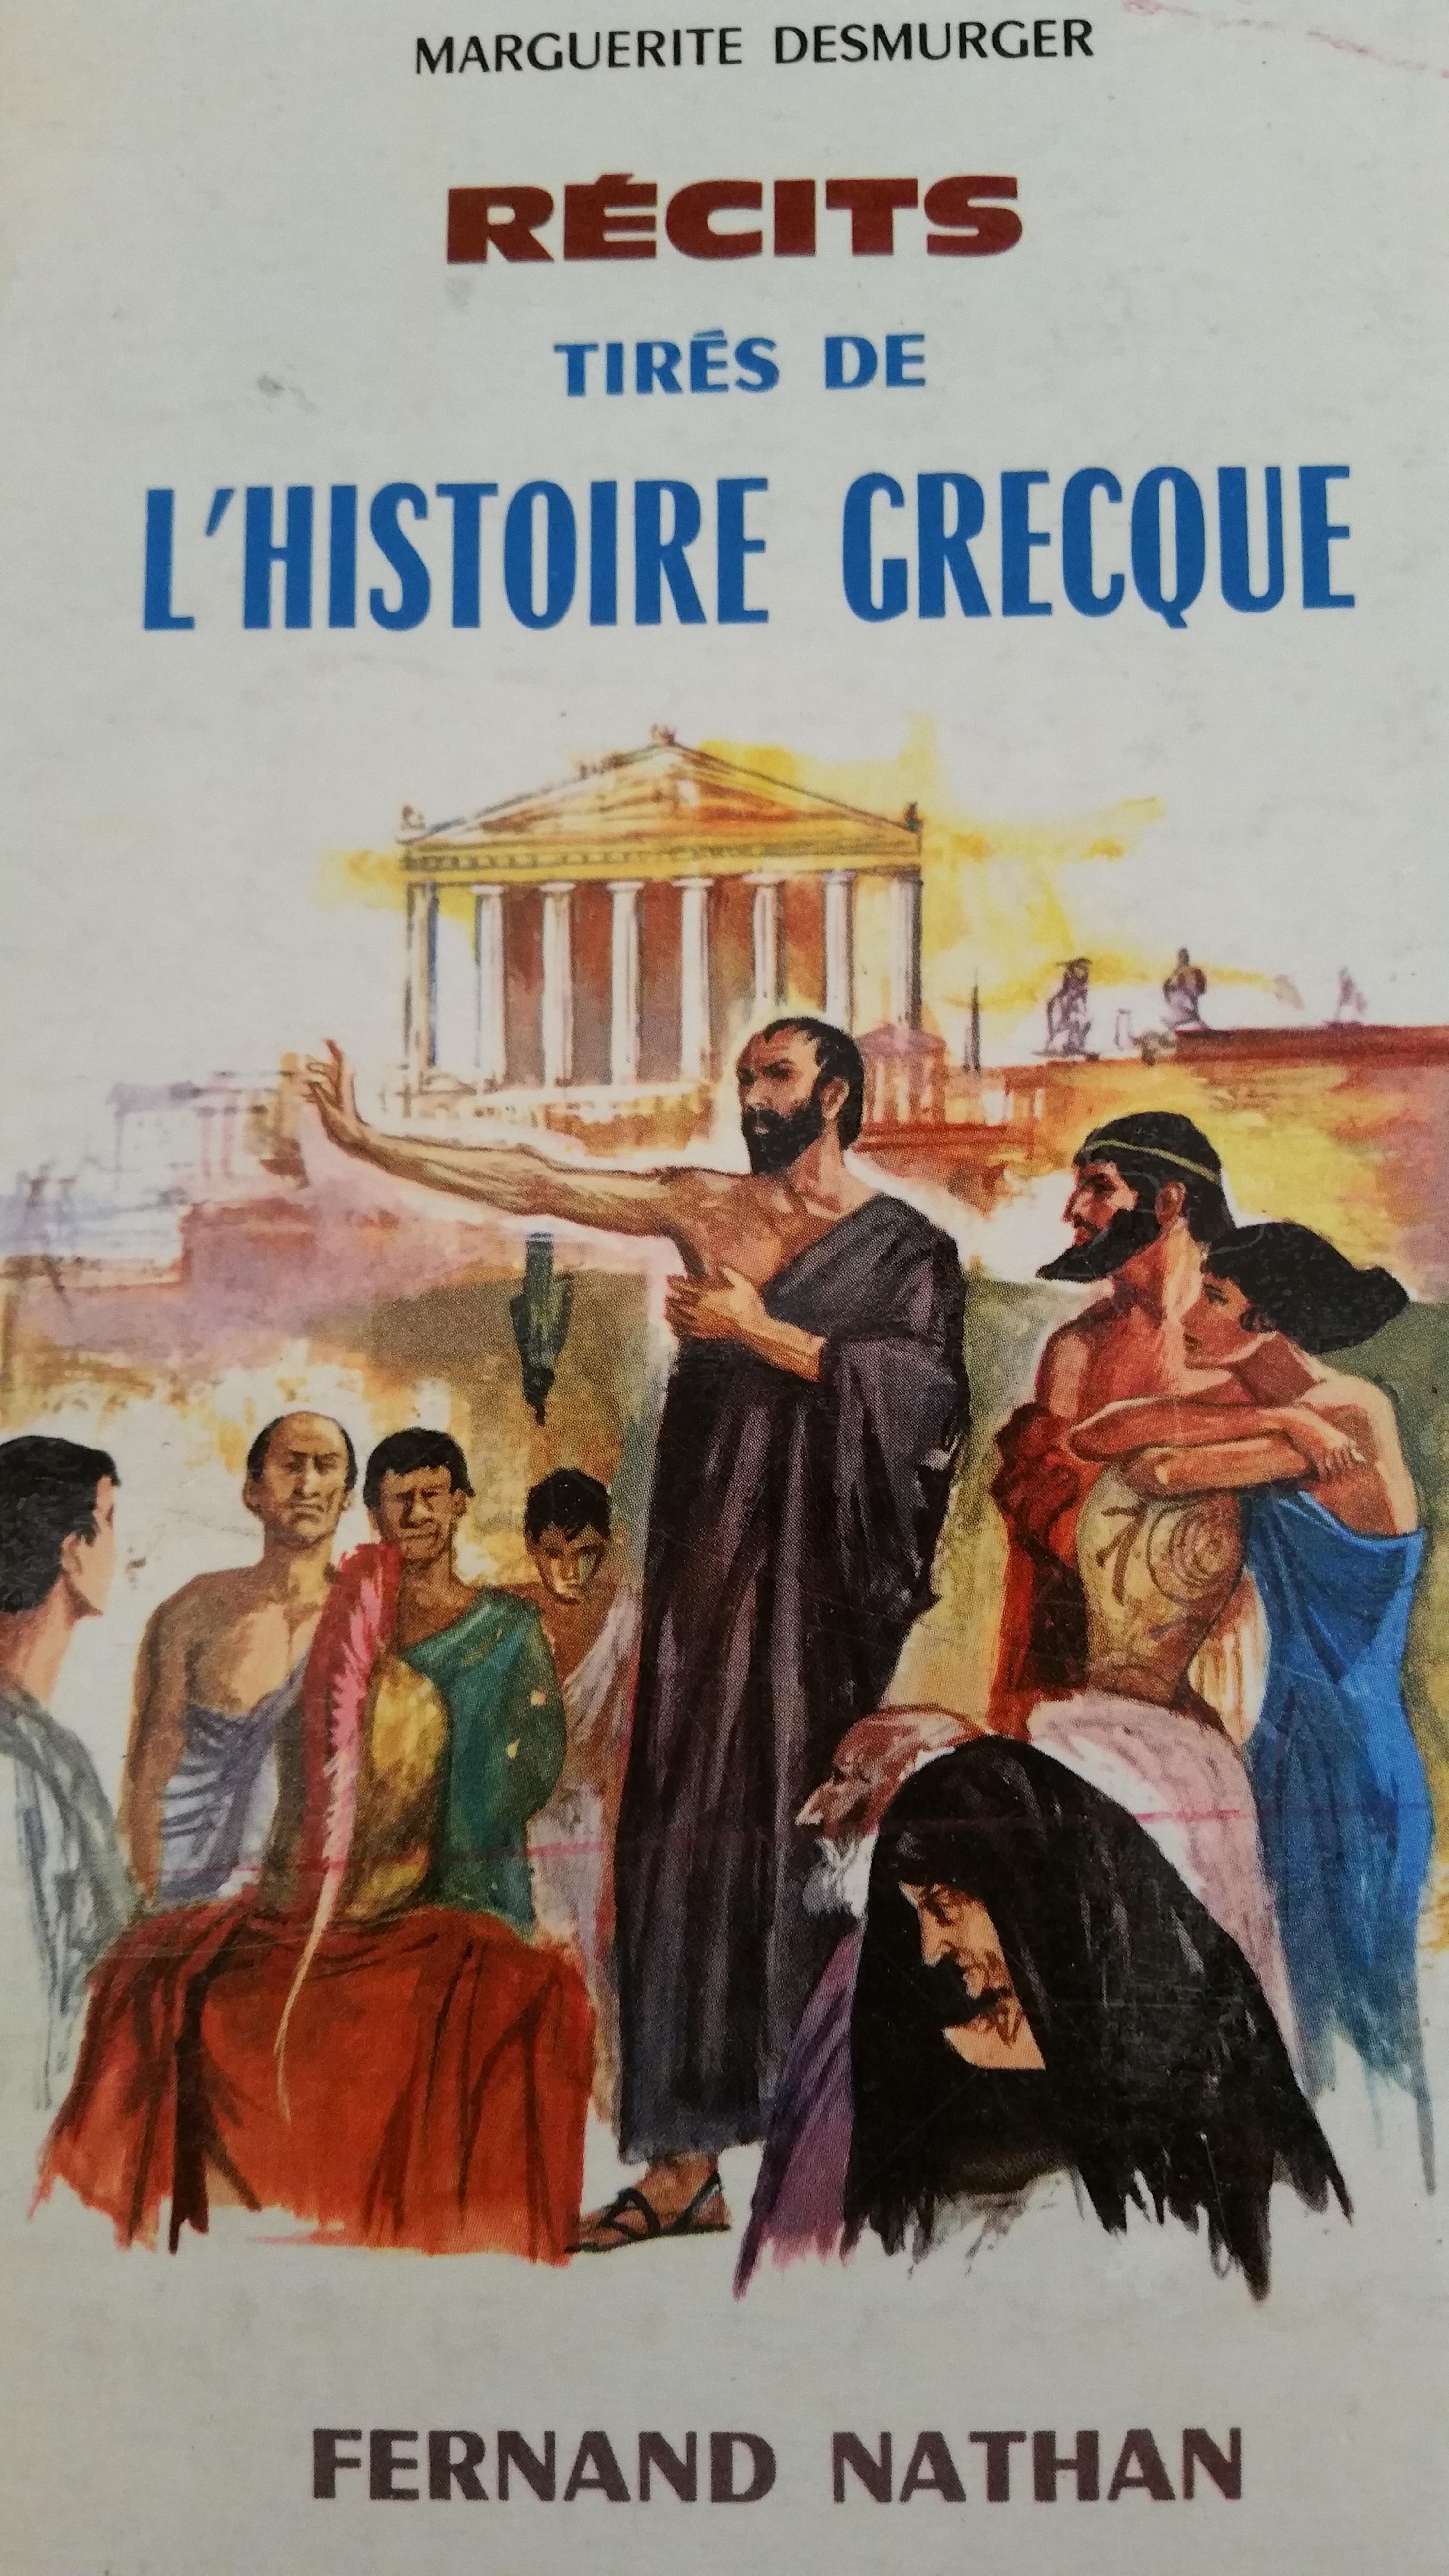 troc de troc récits tirés de l'histoire grecque image 0